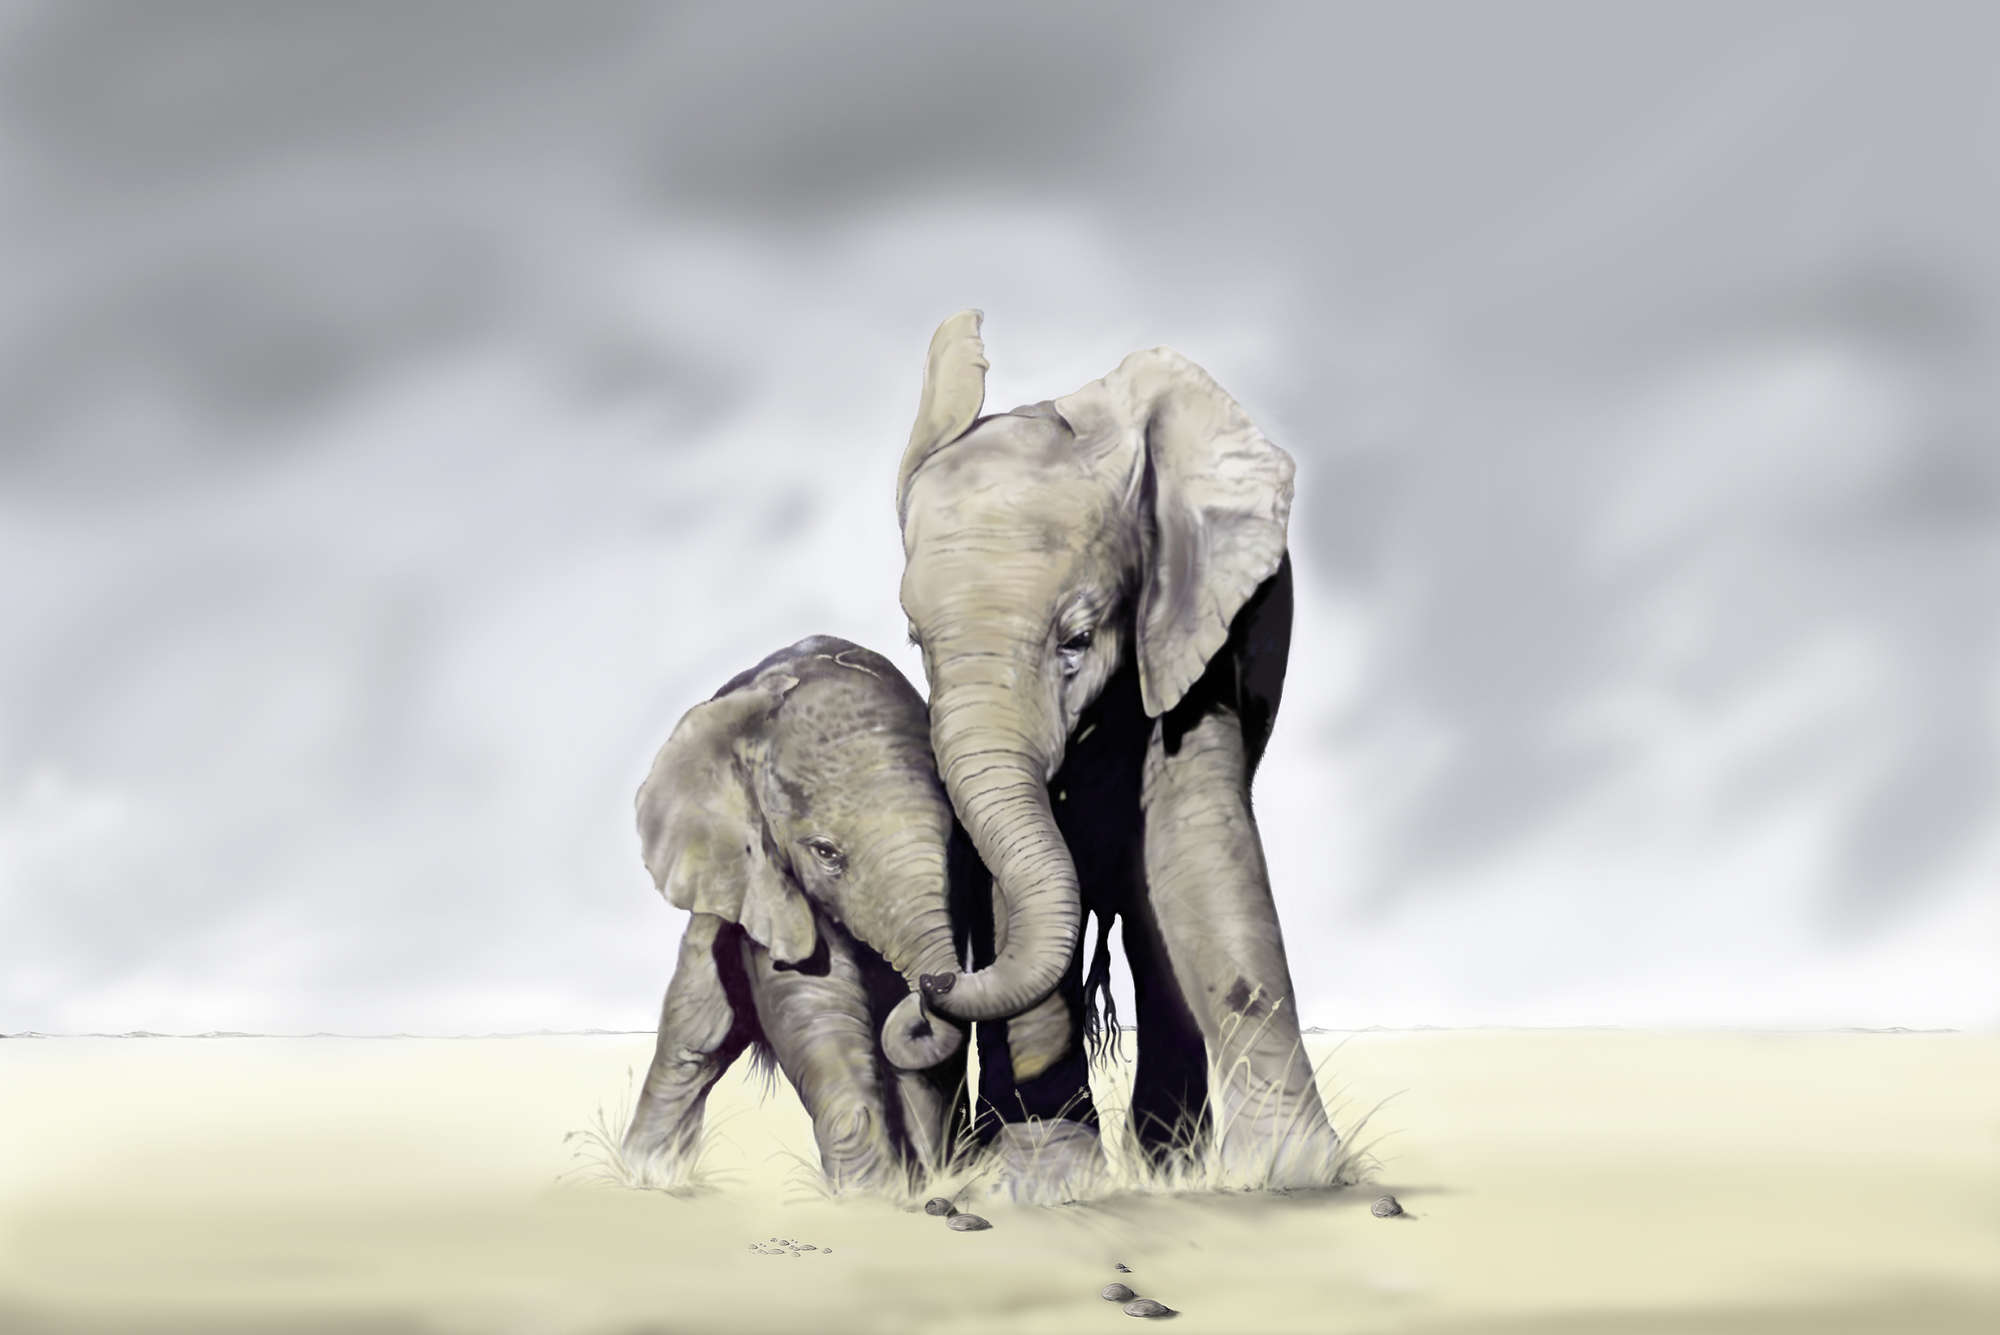             papier peint en papier animal éléphants libres - intissé lisse mat
        